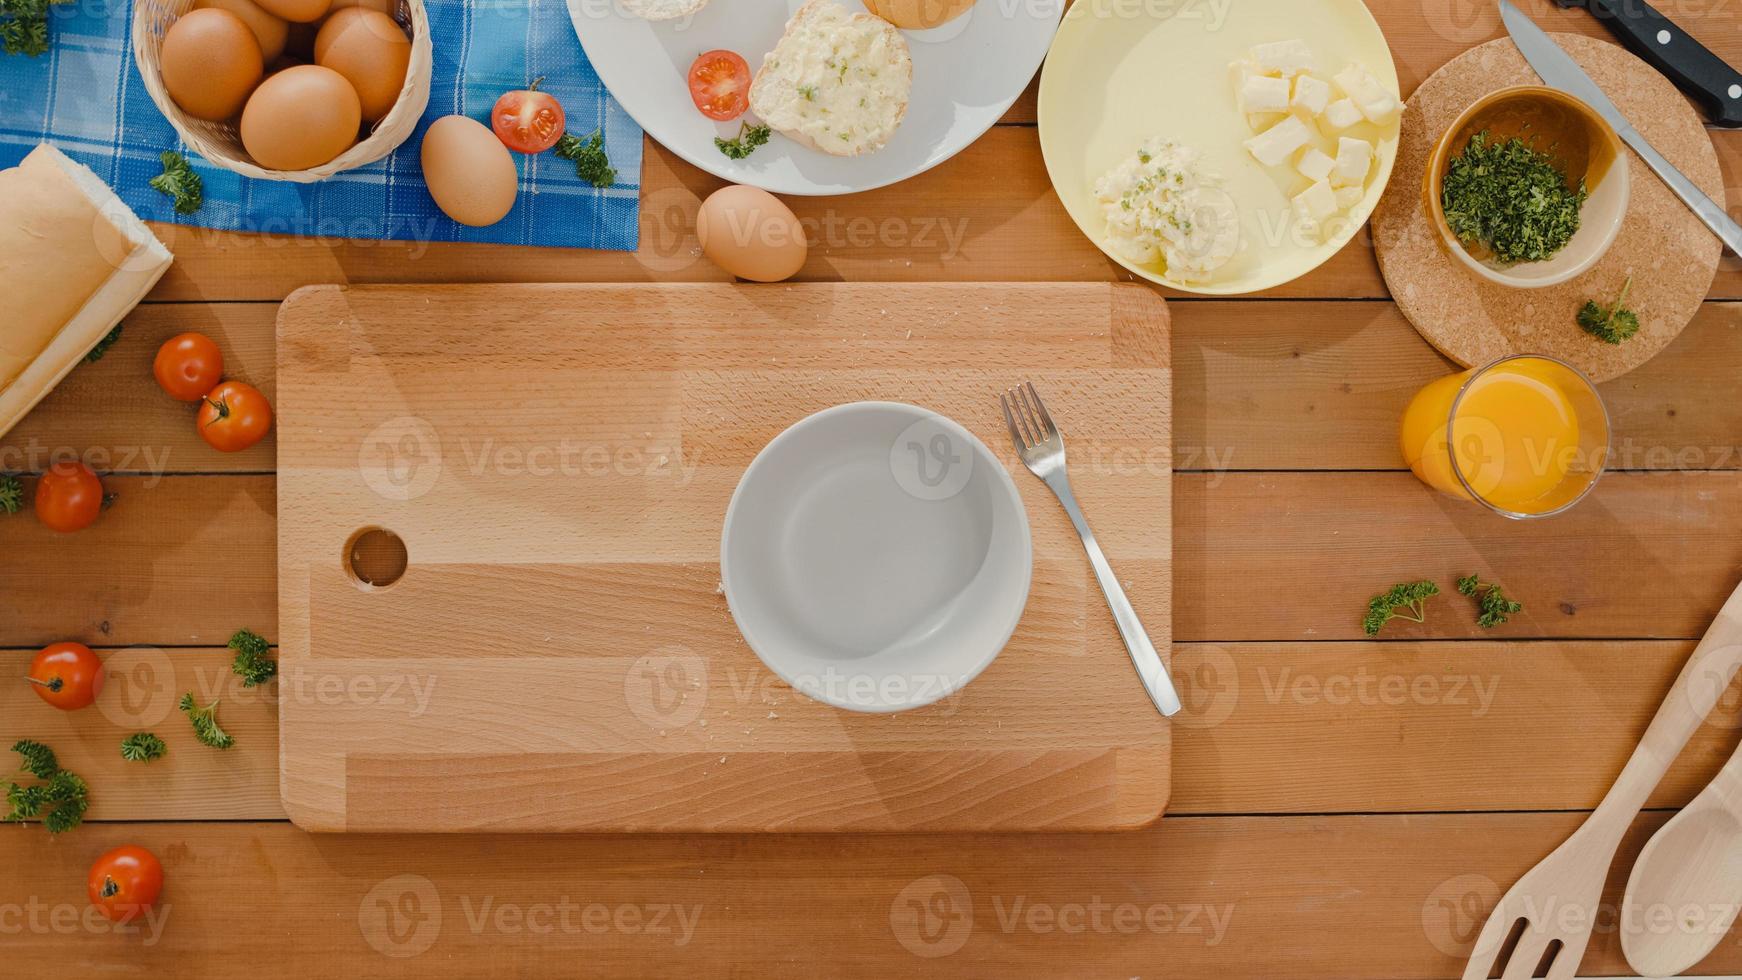 händer på ung asiatisk kvinna kock spricka ägg i keramisk skål koka omelett med grönsaker på träbräda på köksbordet hemma. livsstil hälsosam mat och traditionellt bagerikoncept. skott ovanifrån. foto